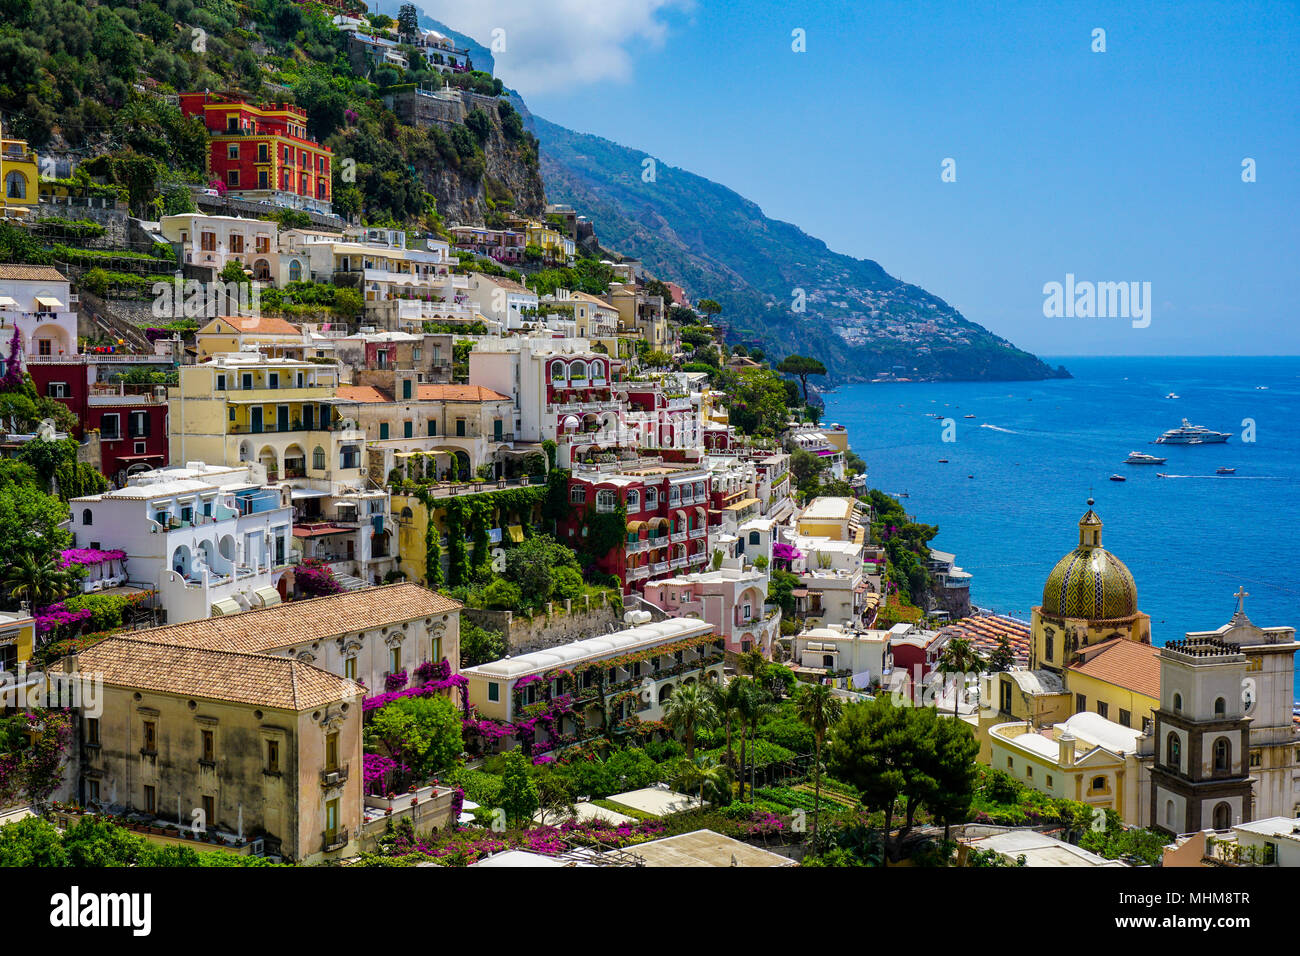 Vista de Positano, Italia desde arriba con vistas a la costa de Amalfi y la Chiesa di Santa Maria Assunta Foto de stock